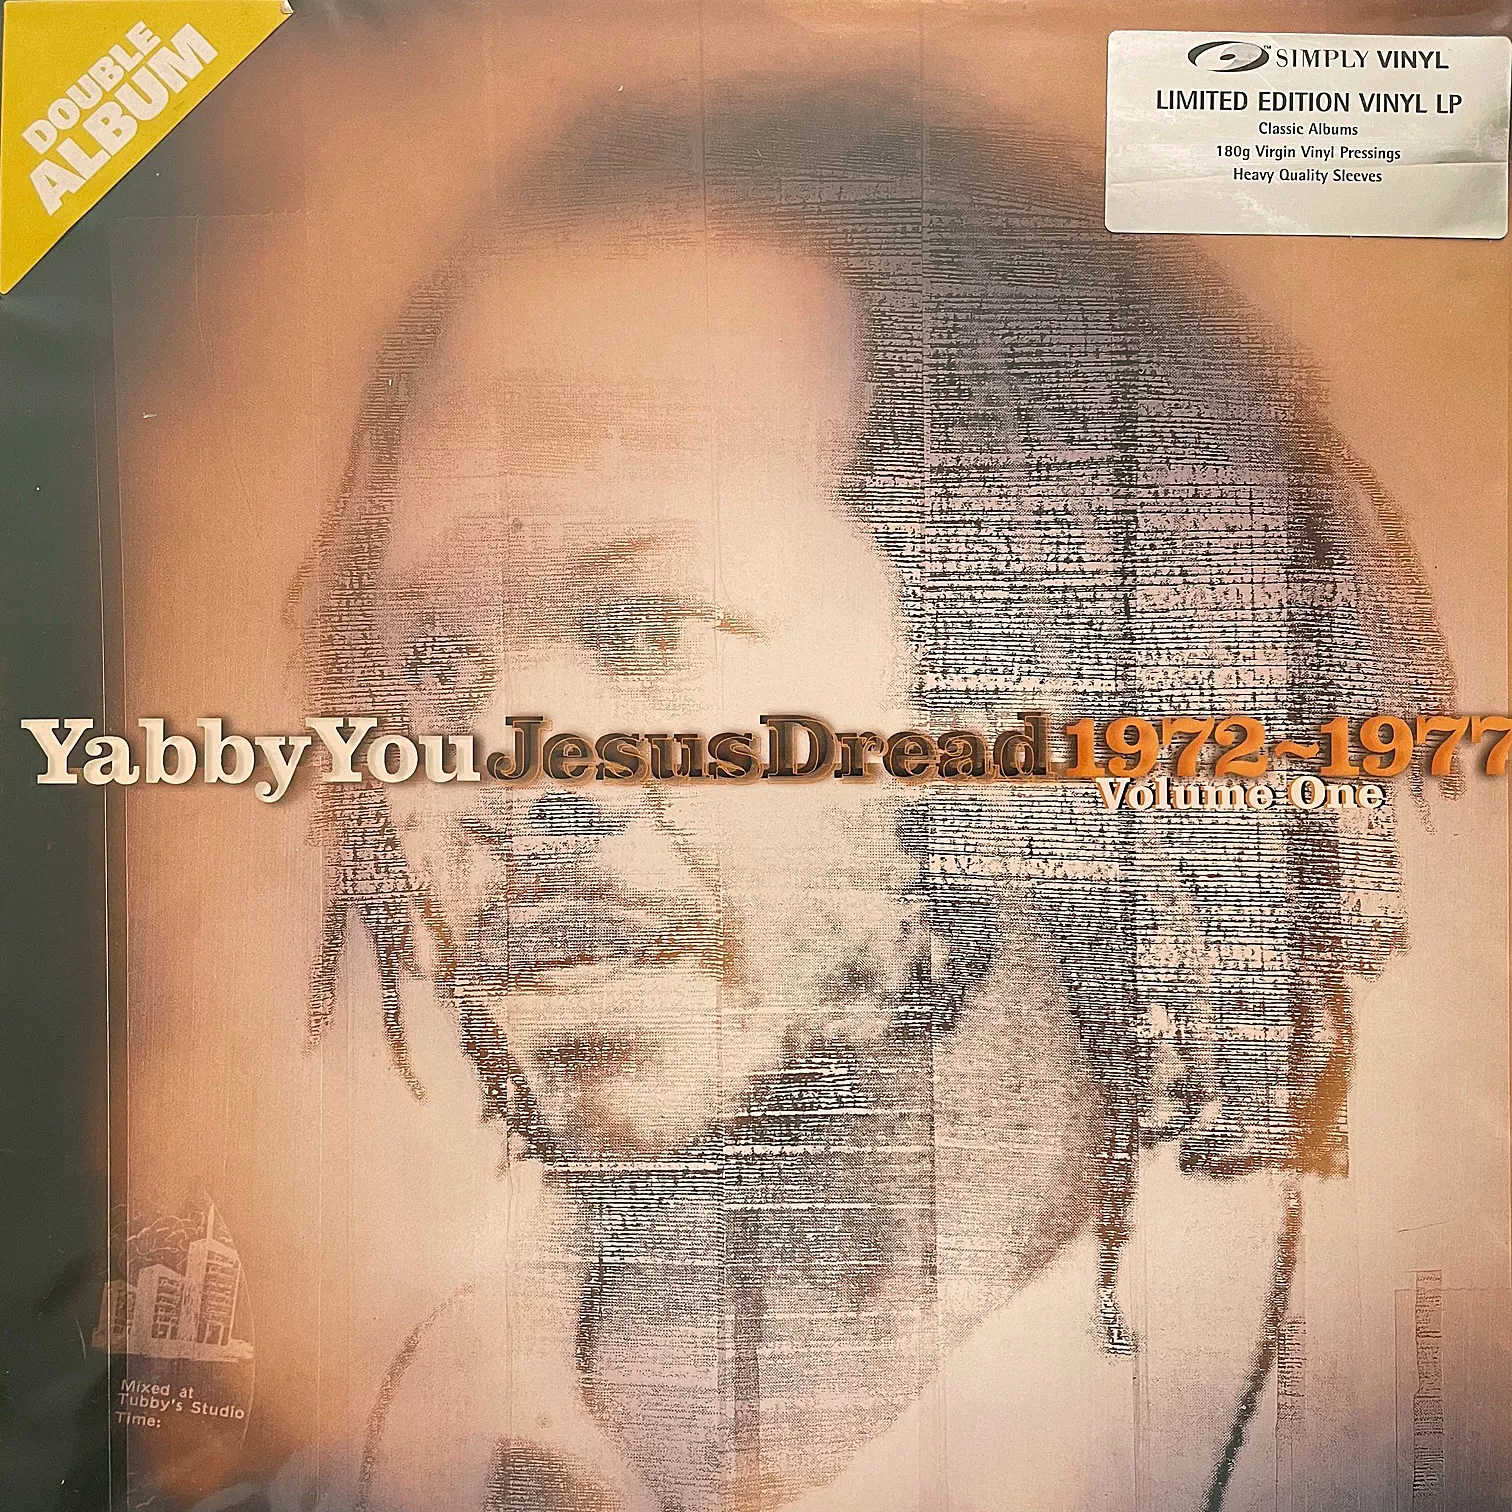 YABBY YOU / JESUS DREAD 1972-1977 VOLUME ONE